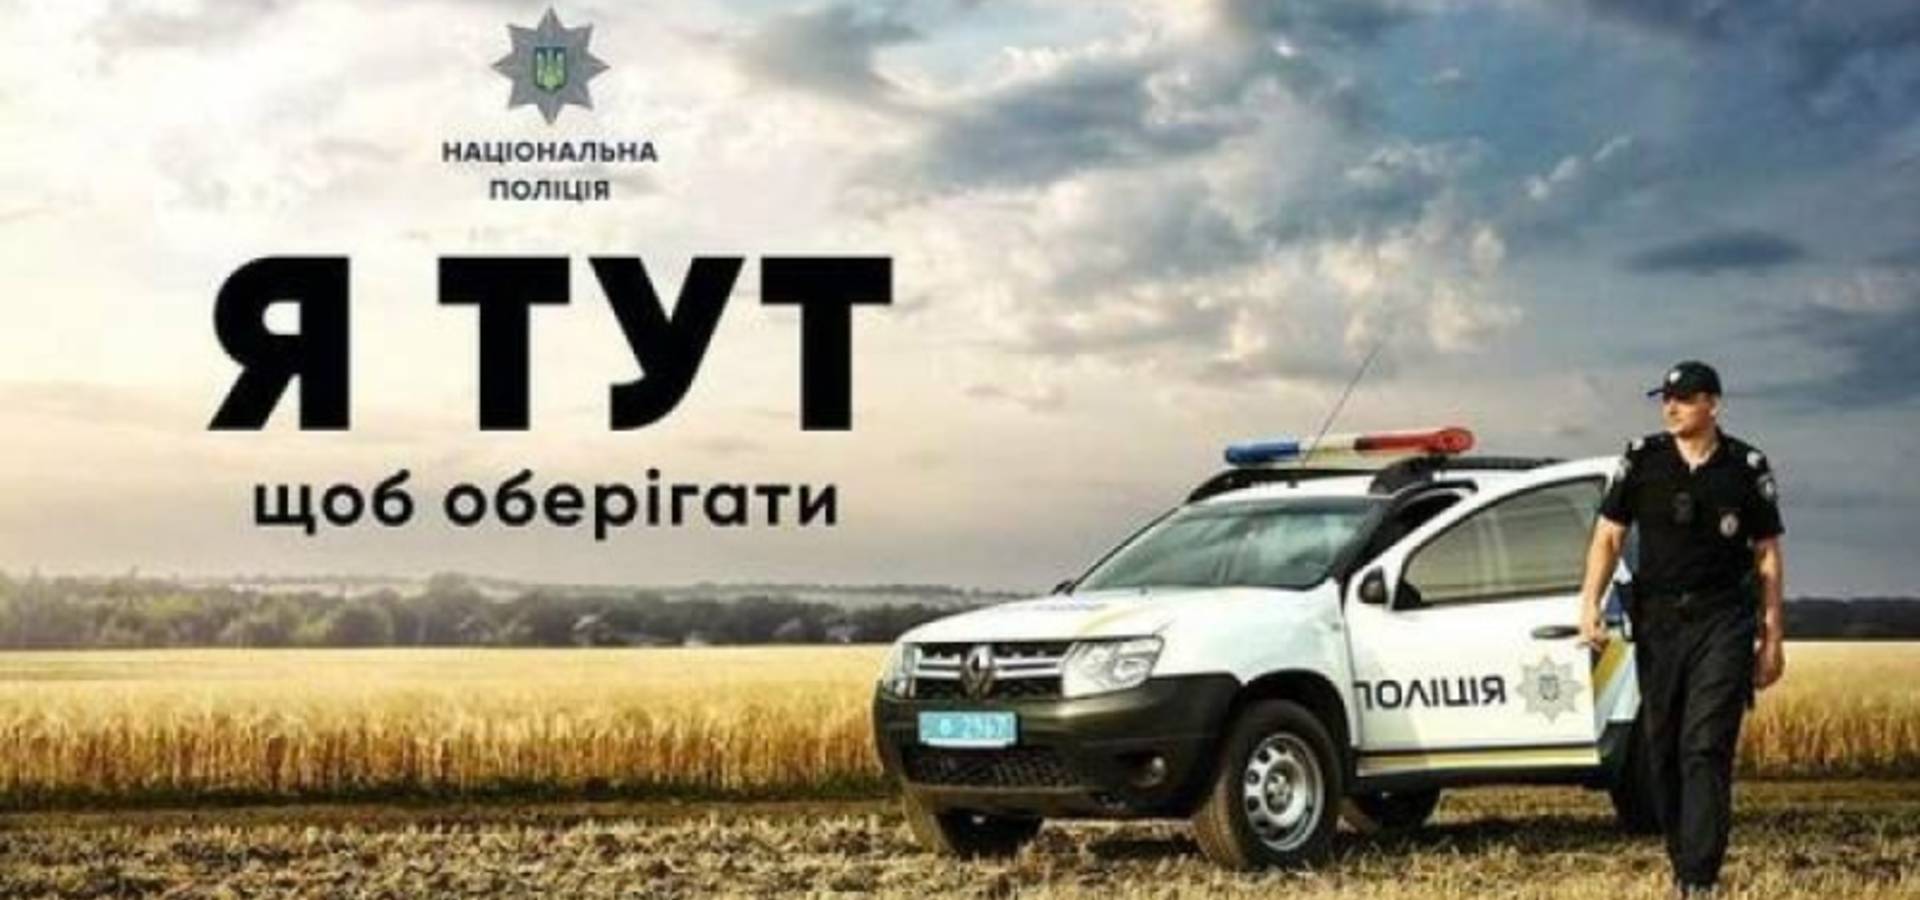 Поліція оголосила конкурс на посади поліцейських офіцерів громад у Хмільницькій громаді